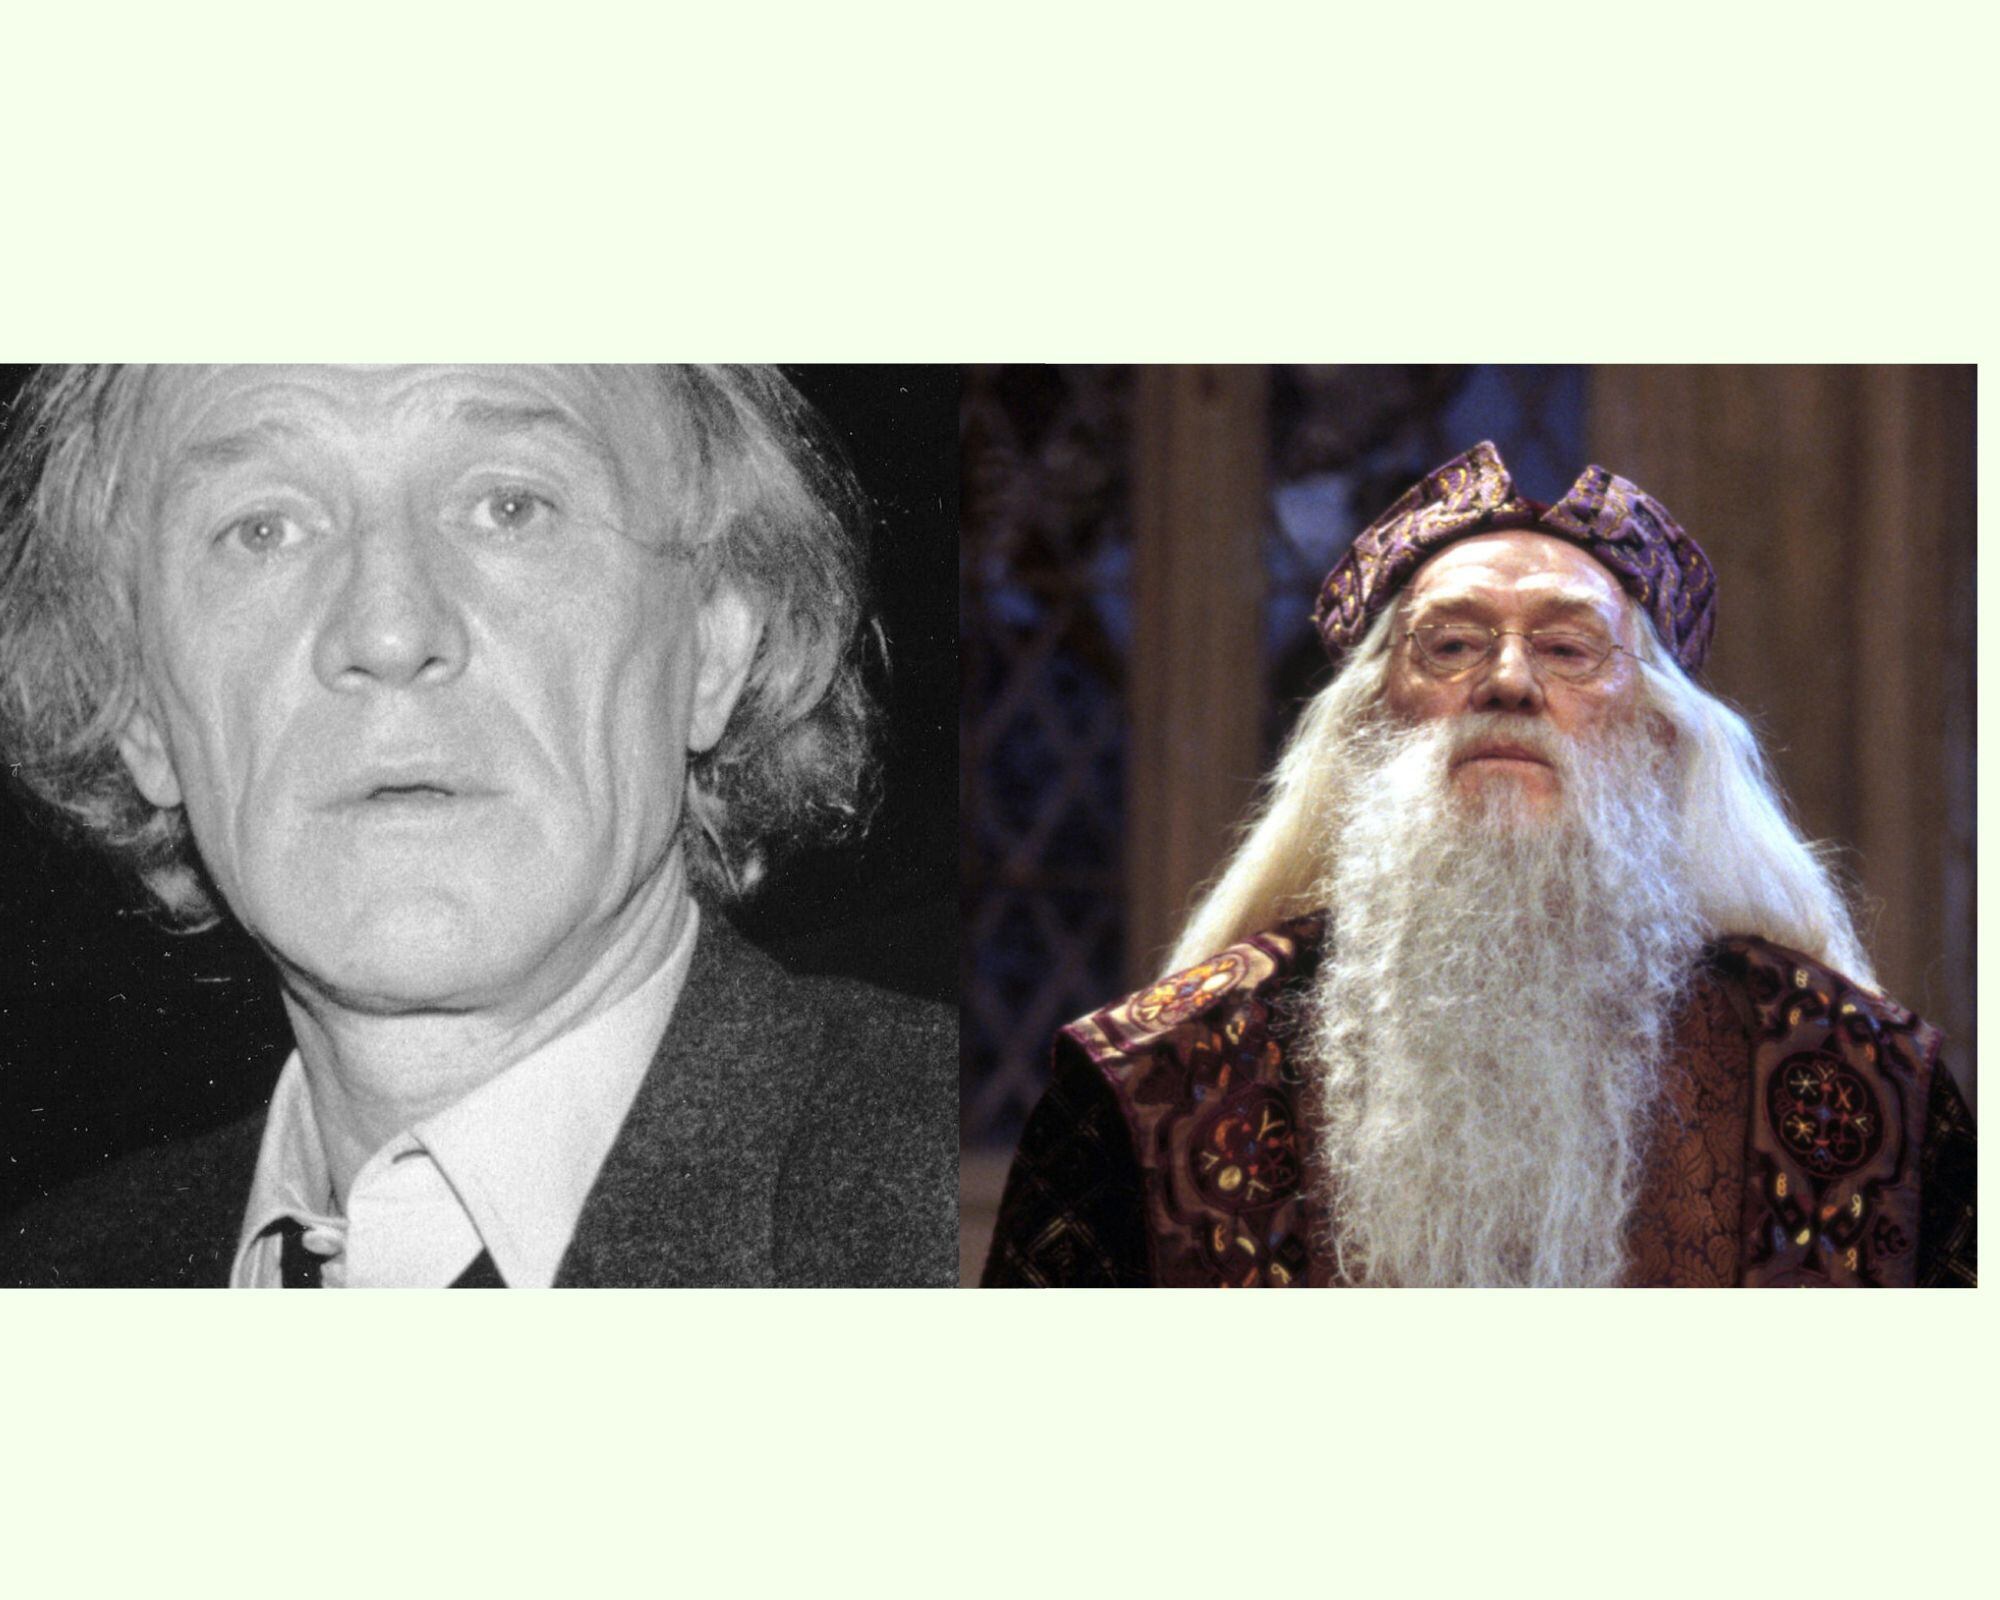 Richard Harris fue el primer Albus Dumbledore en la saga de Harry Potter. Falleció a los 72 años, poco después de rodar el segundo filme 'La cámara de los secretos'. Foto: Warner Bros - WikiCommons